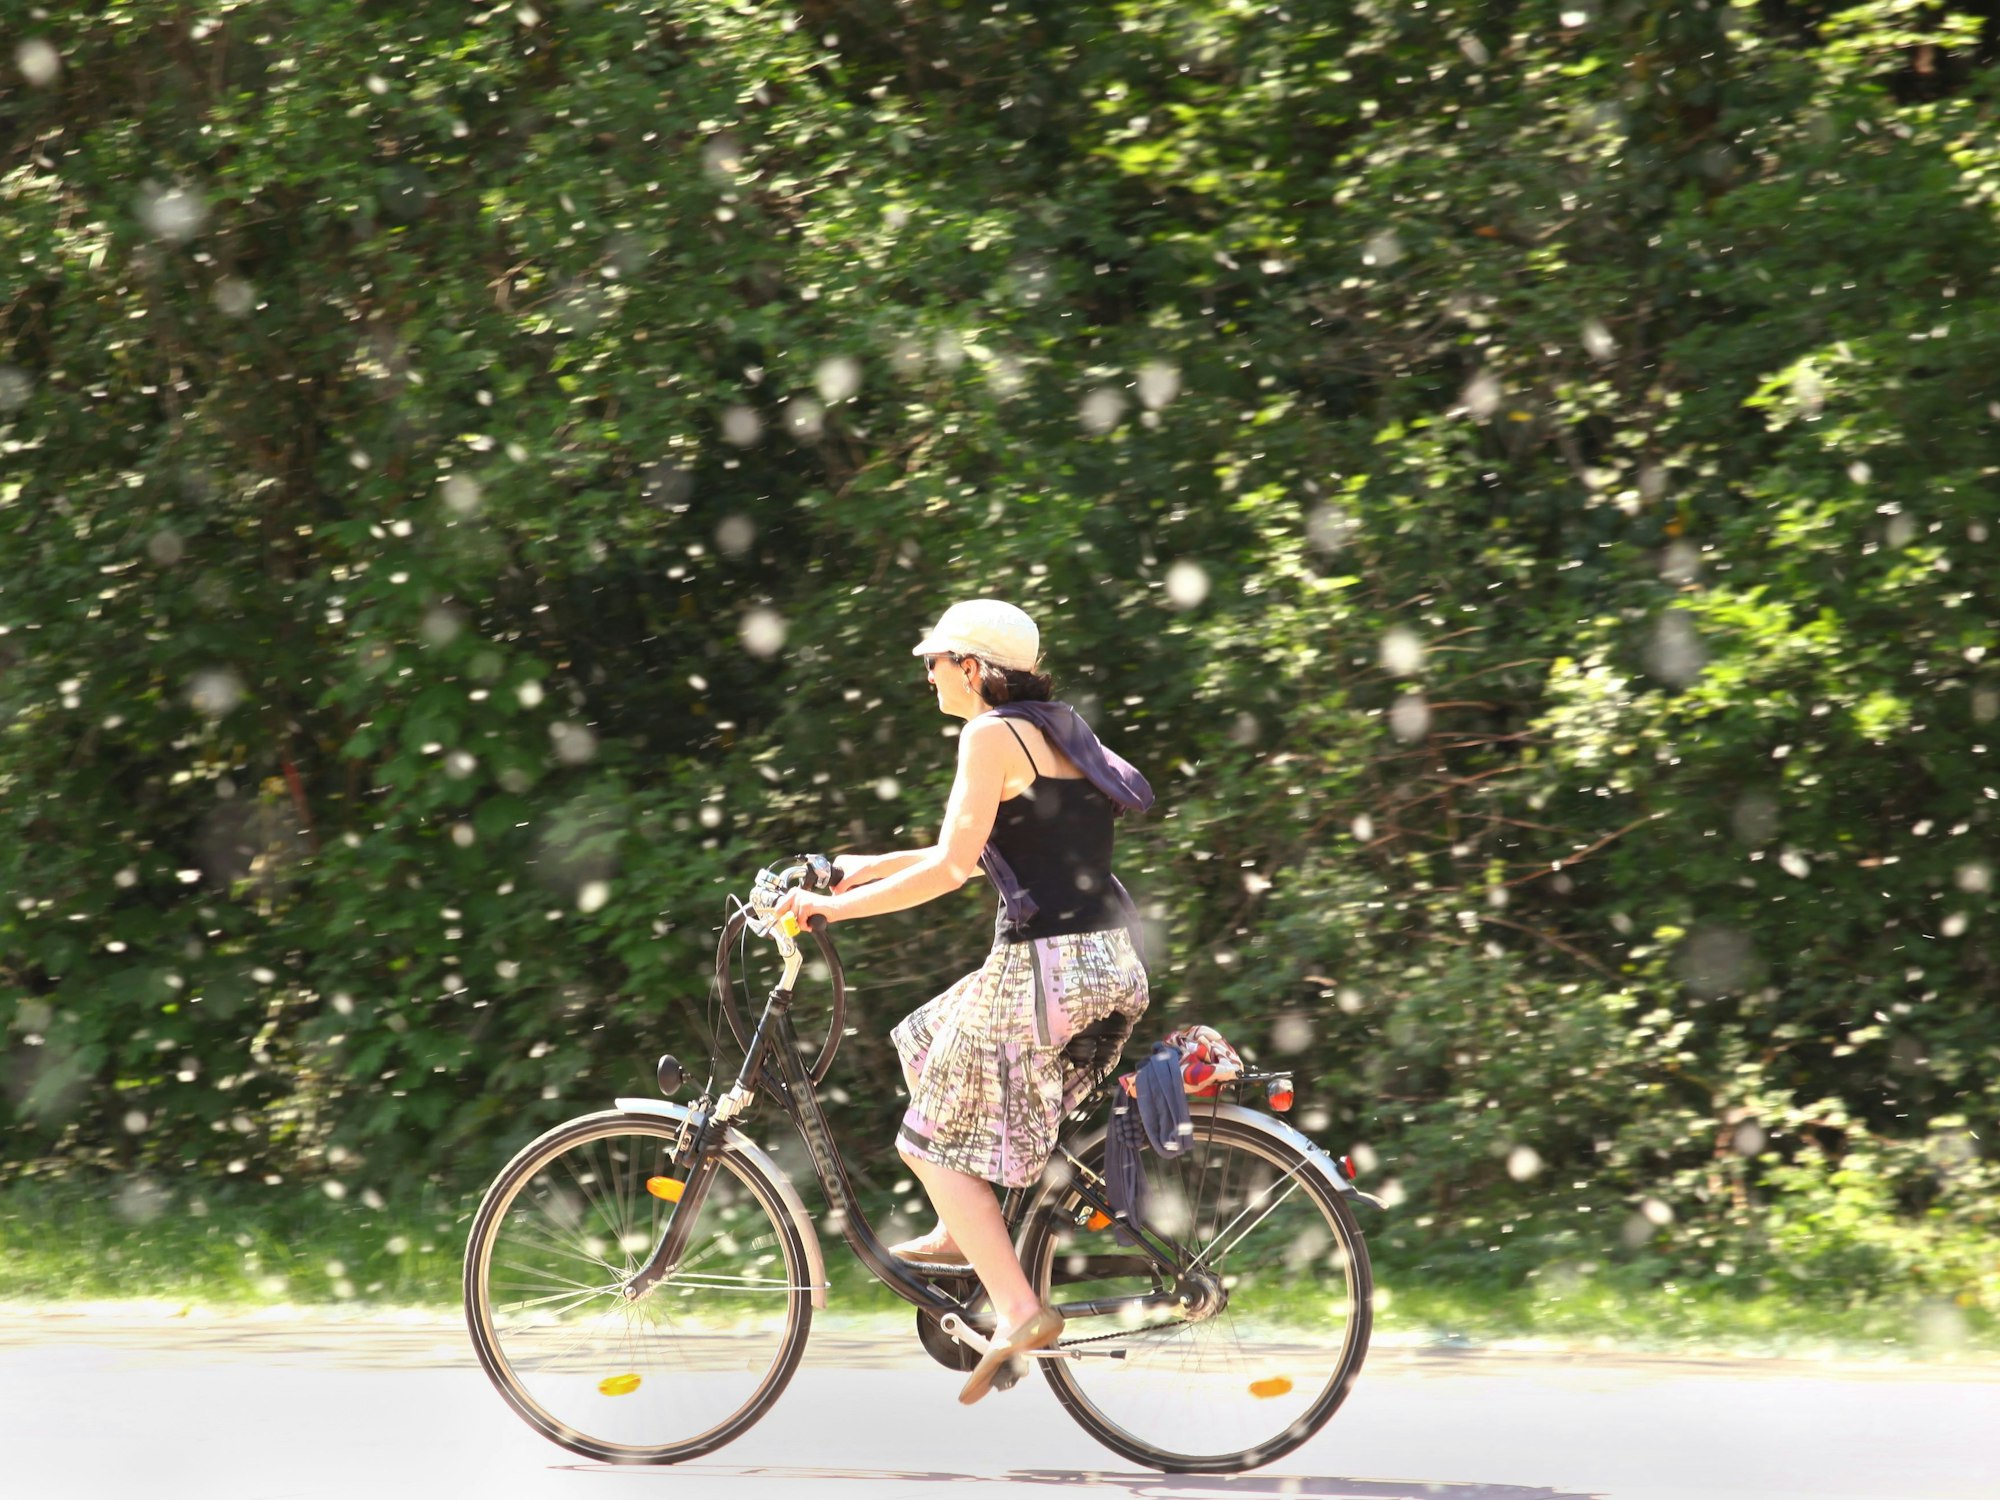 Eine Frau fährt mit dem Fahrrad durch herumfliegende Pappelsamen.